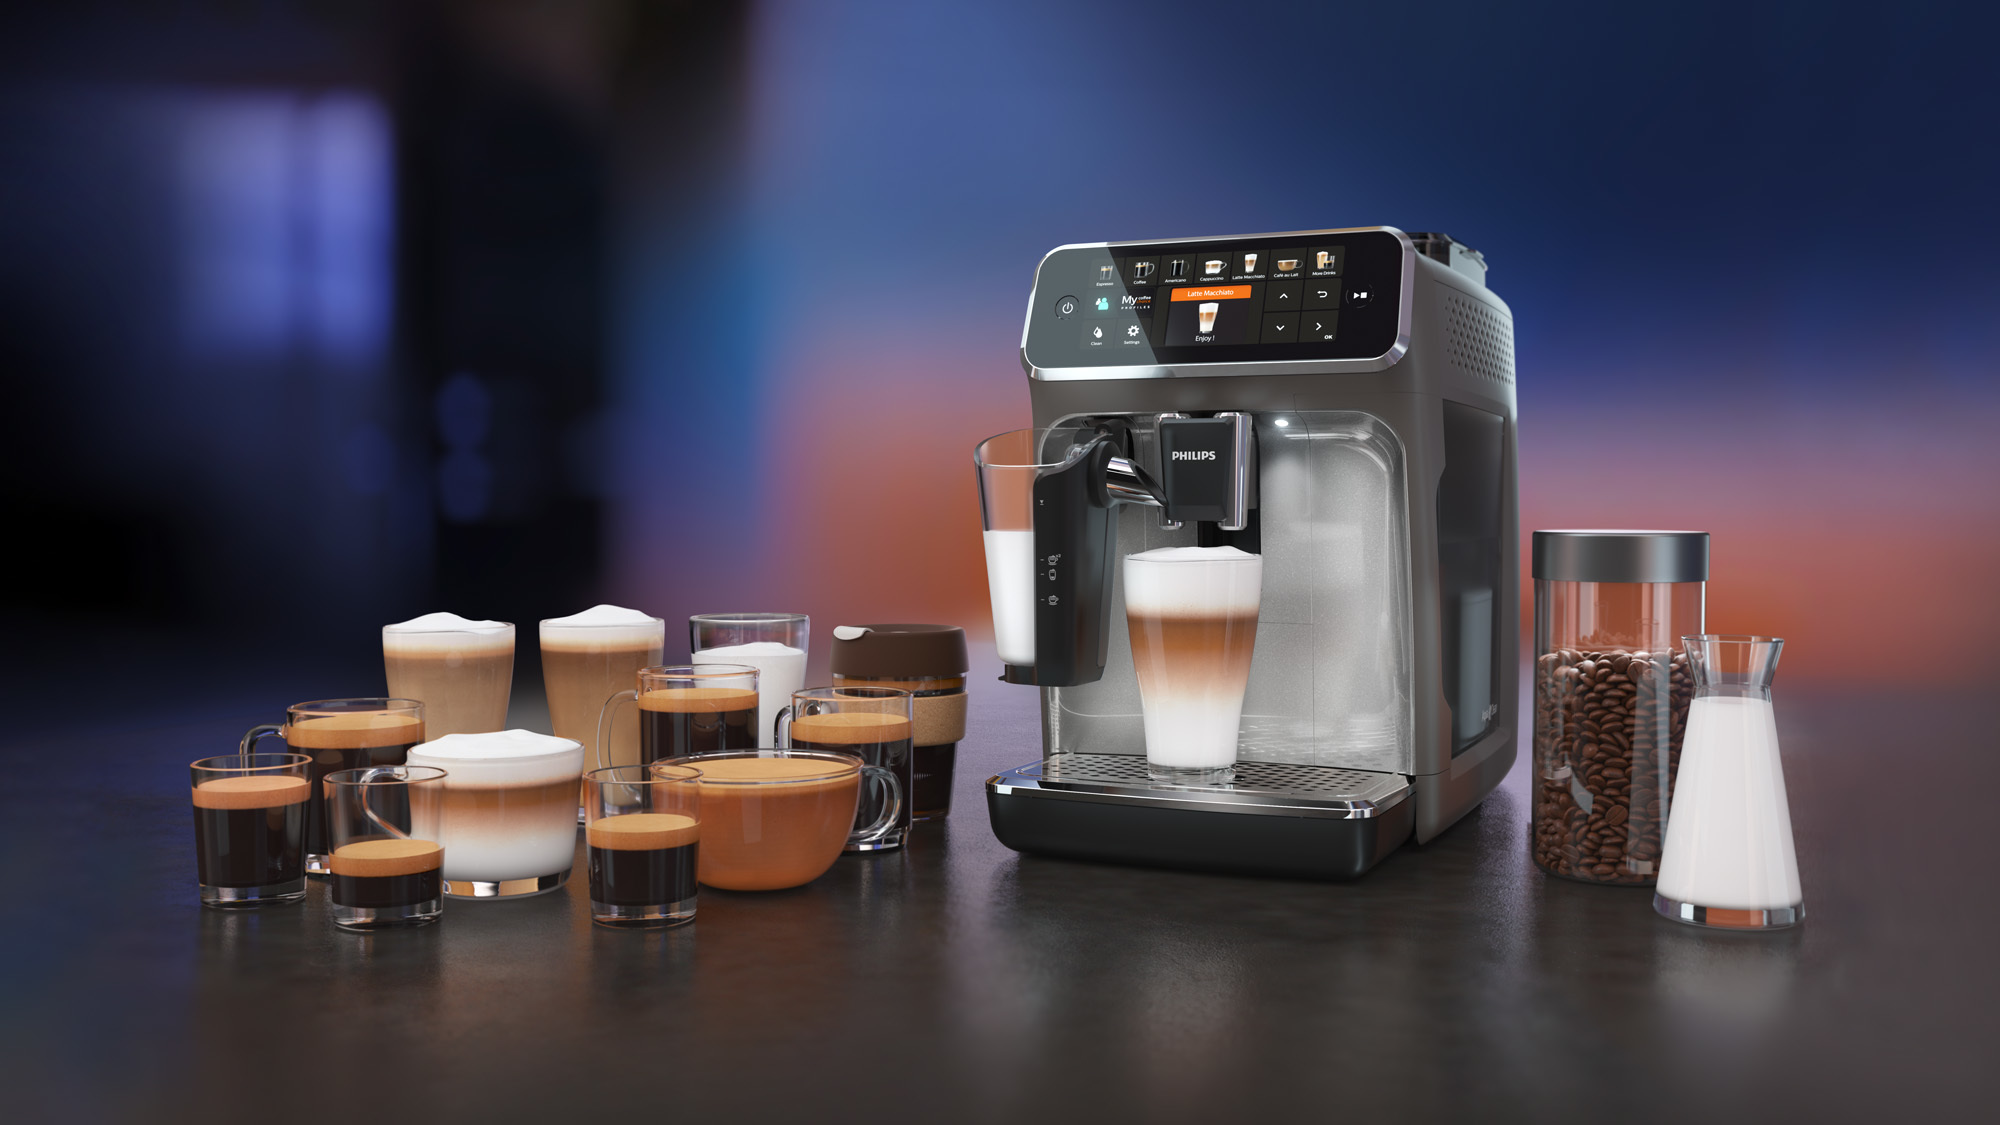 Esta cafetera permite preparar hasta 12 bebidas diferentes, porque cada momento del día tiene su propio tipo de café.